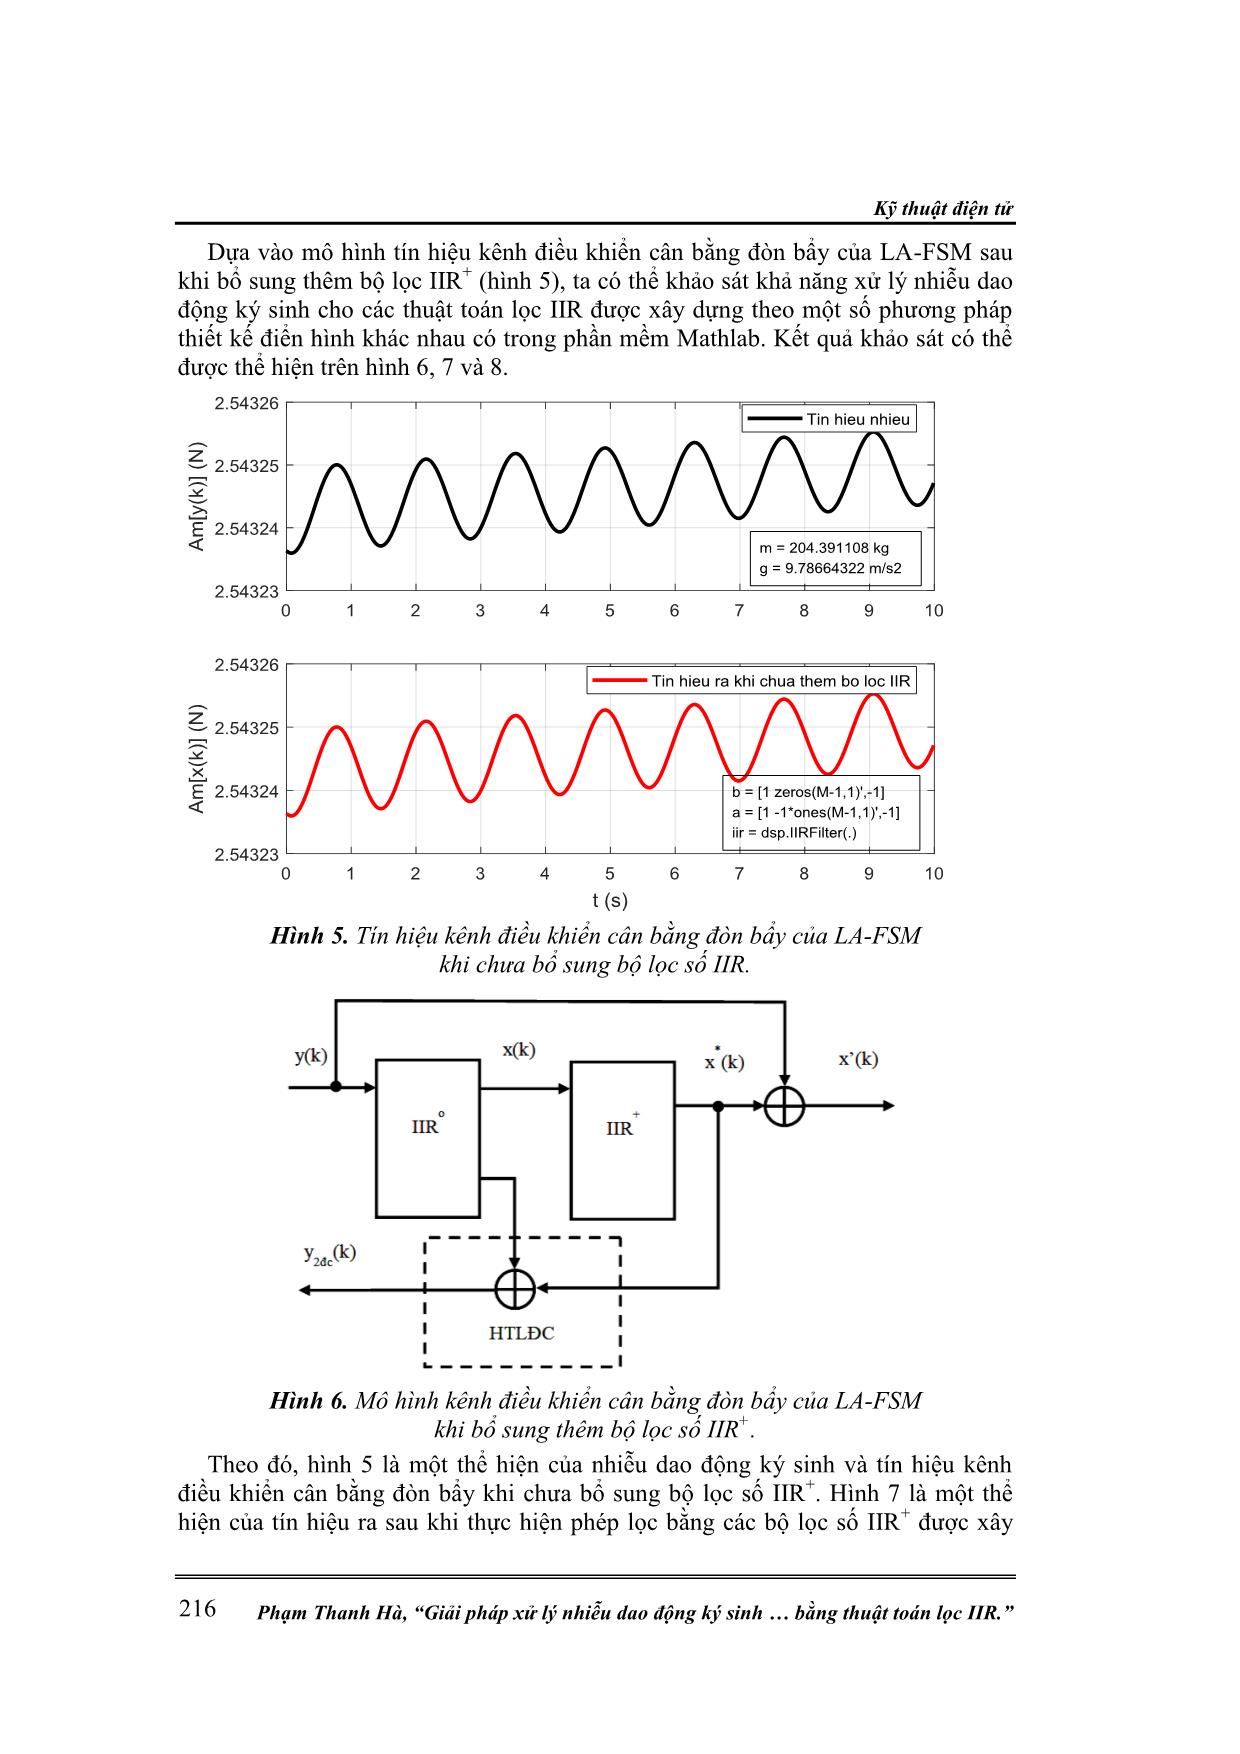 Giải pháp xử lý nhiễu dao động ký sinh cho tín hiệu kênh điều khiển cân bằng đòn bẩy của máy chuẩn lực kiểu khuếch đại đòn bẩy (LA-FSM) bằng thuật toán lọc IIR trang 5